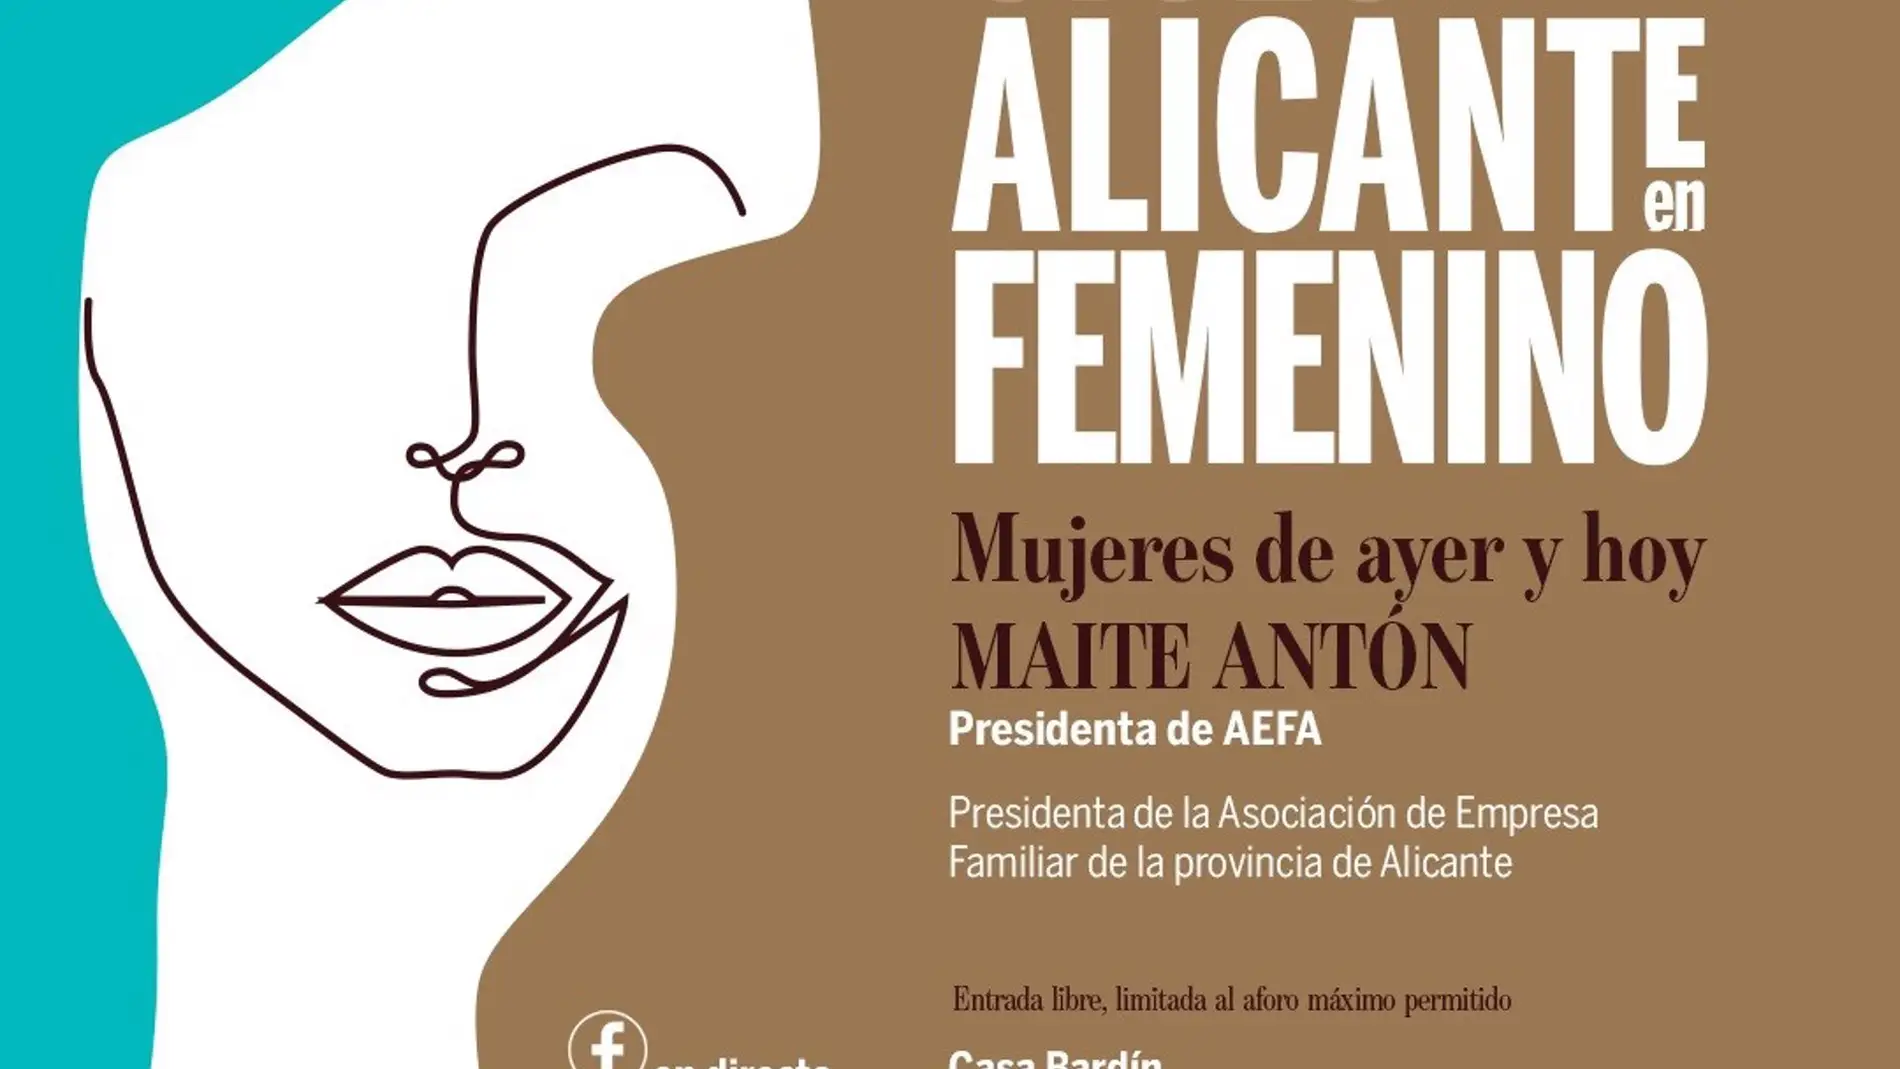 El Gil-Albert organiza un encuentro para hablar de la mujer y la empresa familiar con la presidenta de AEFA